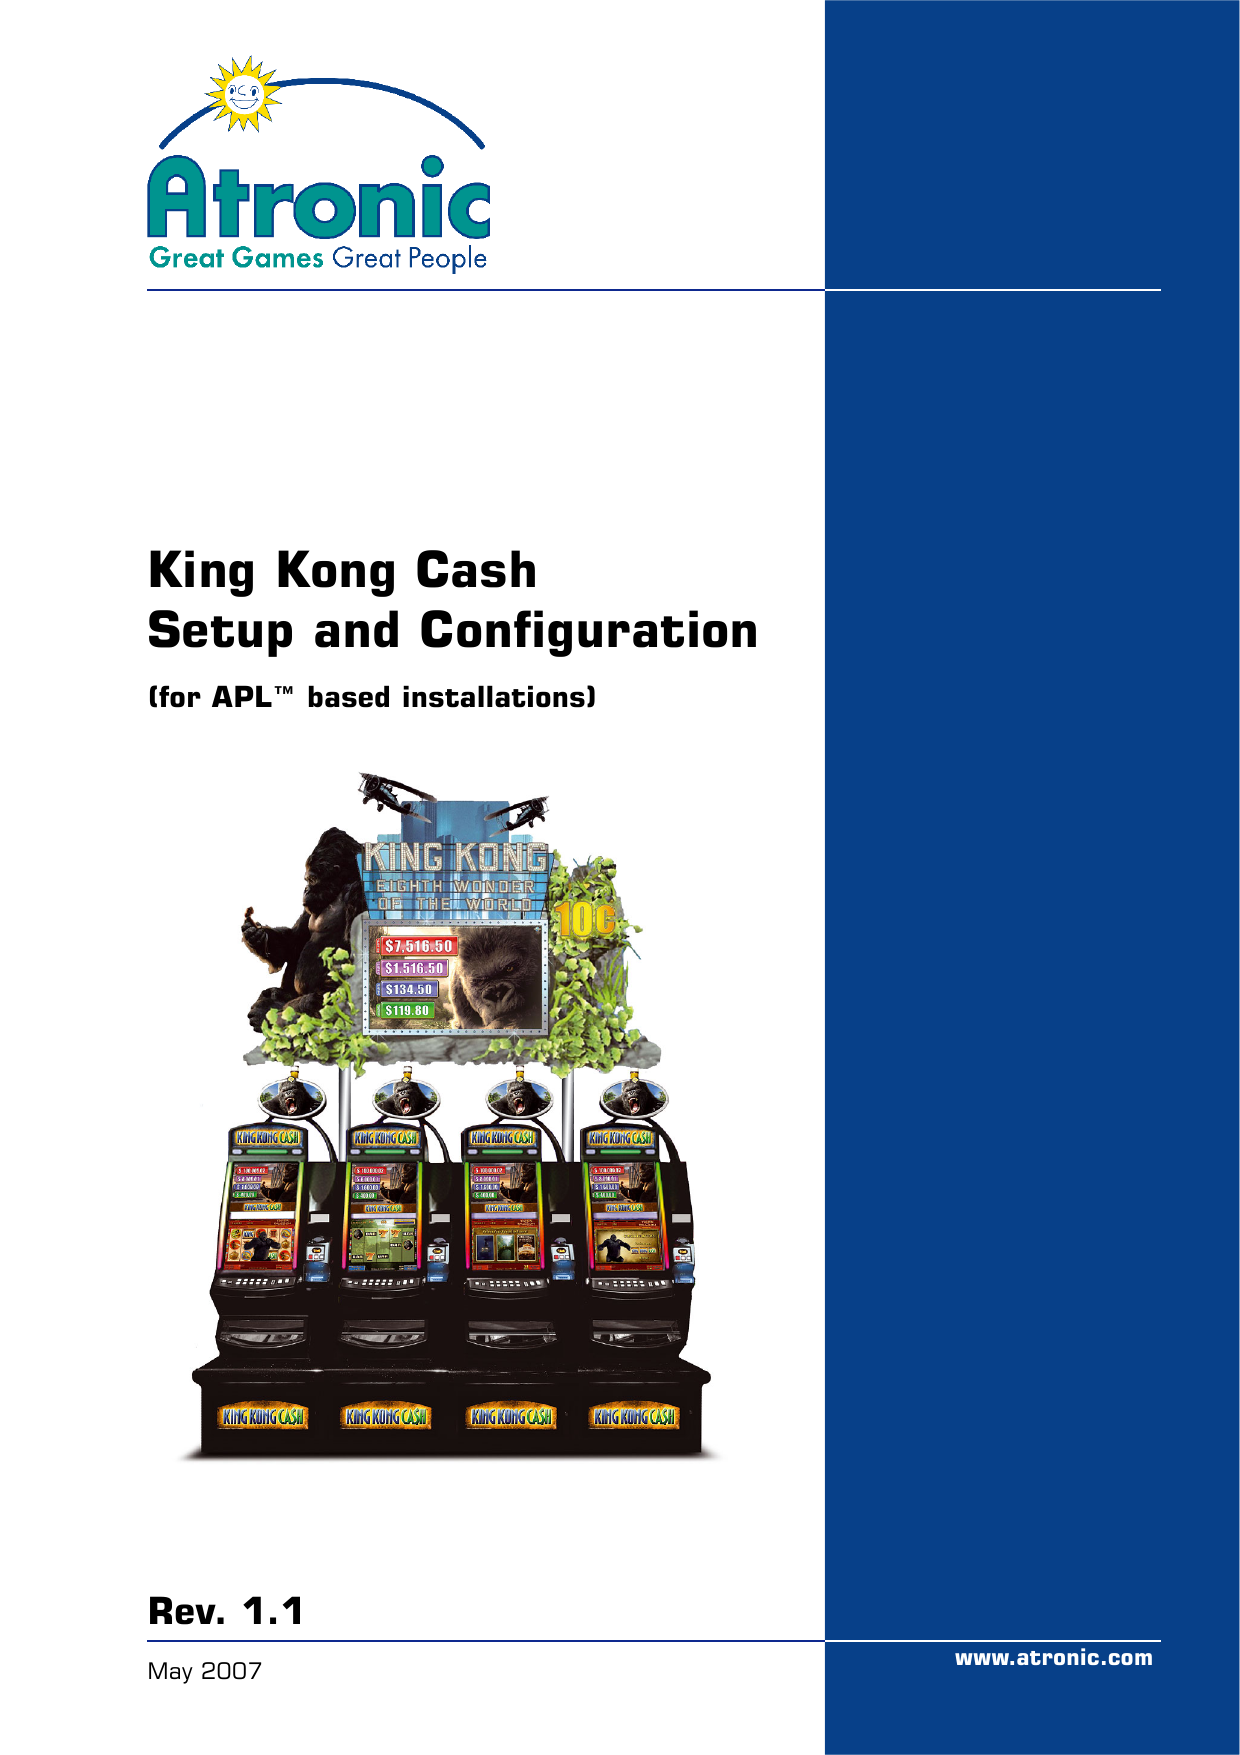 King Kong Cash Playable Demo